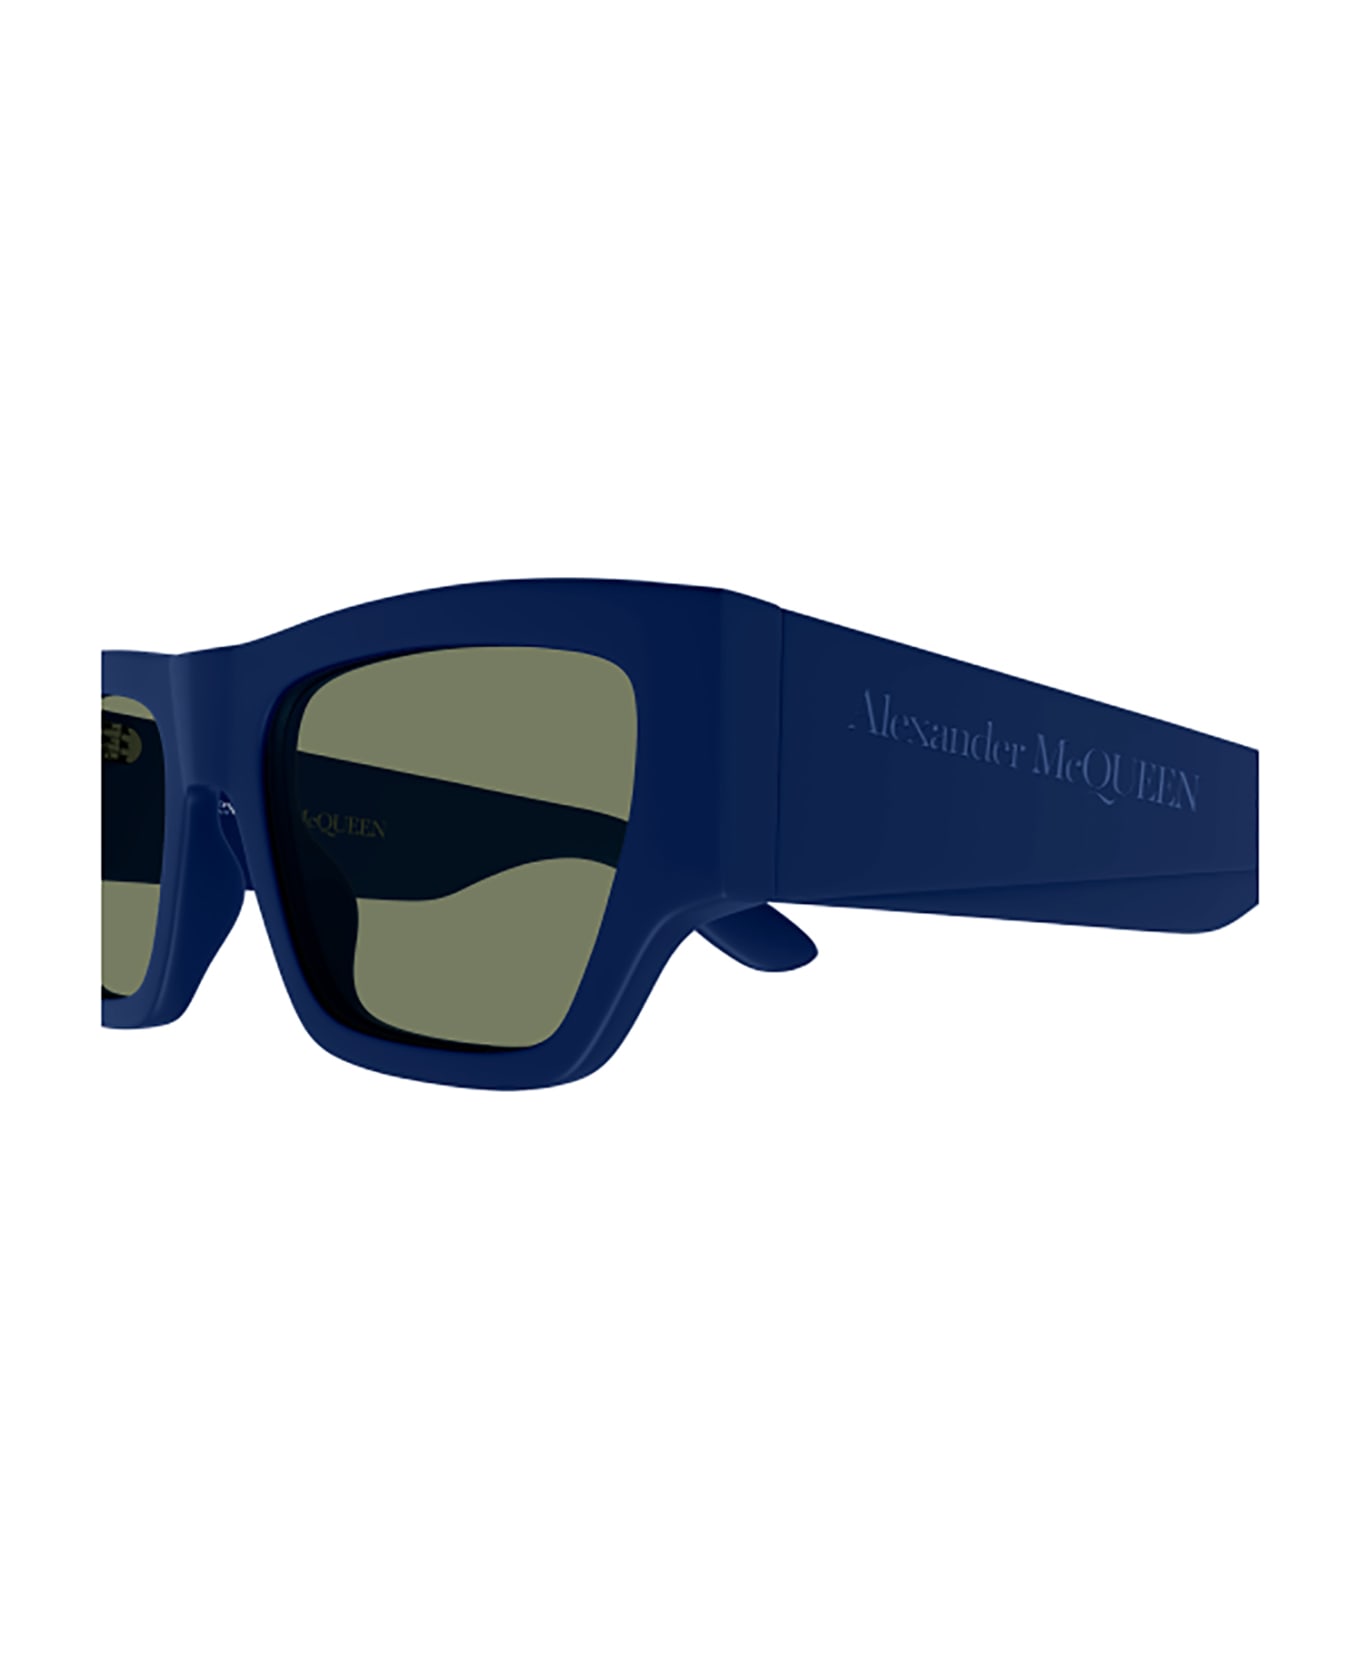 Alexander McQueen Eyewear 1fqq4mf0a - ray ban hexagonal frame sunglasses item